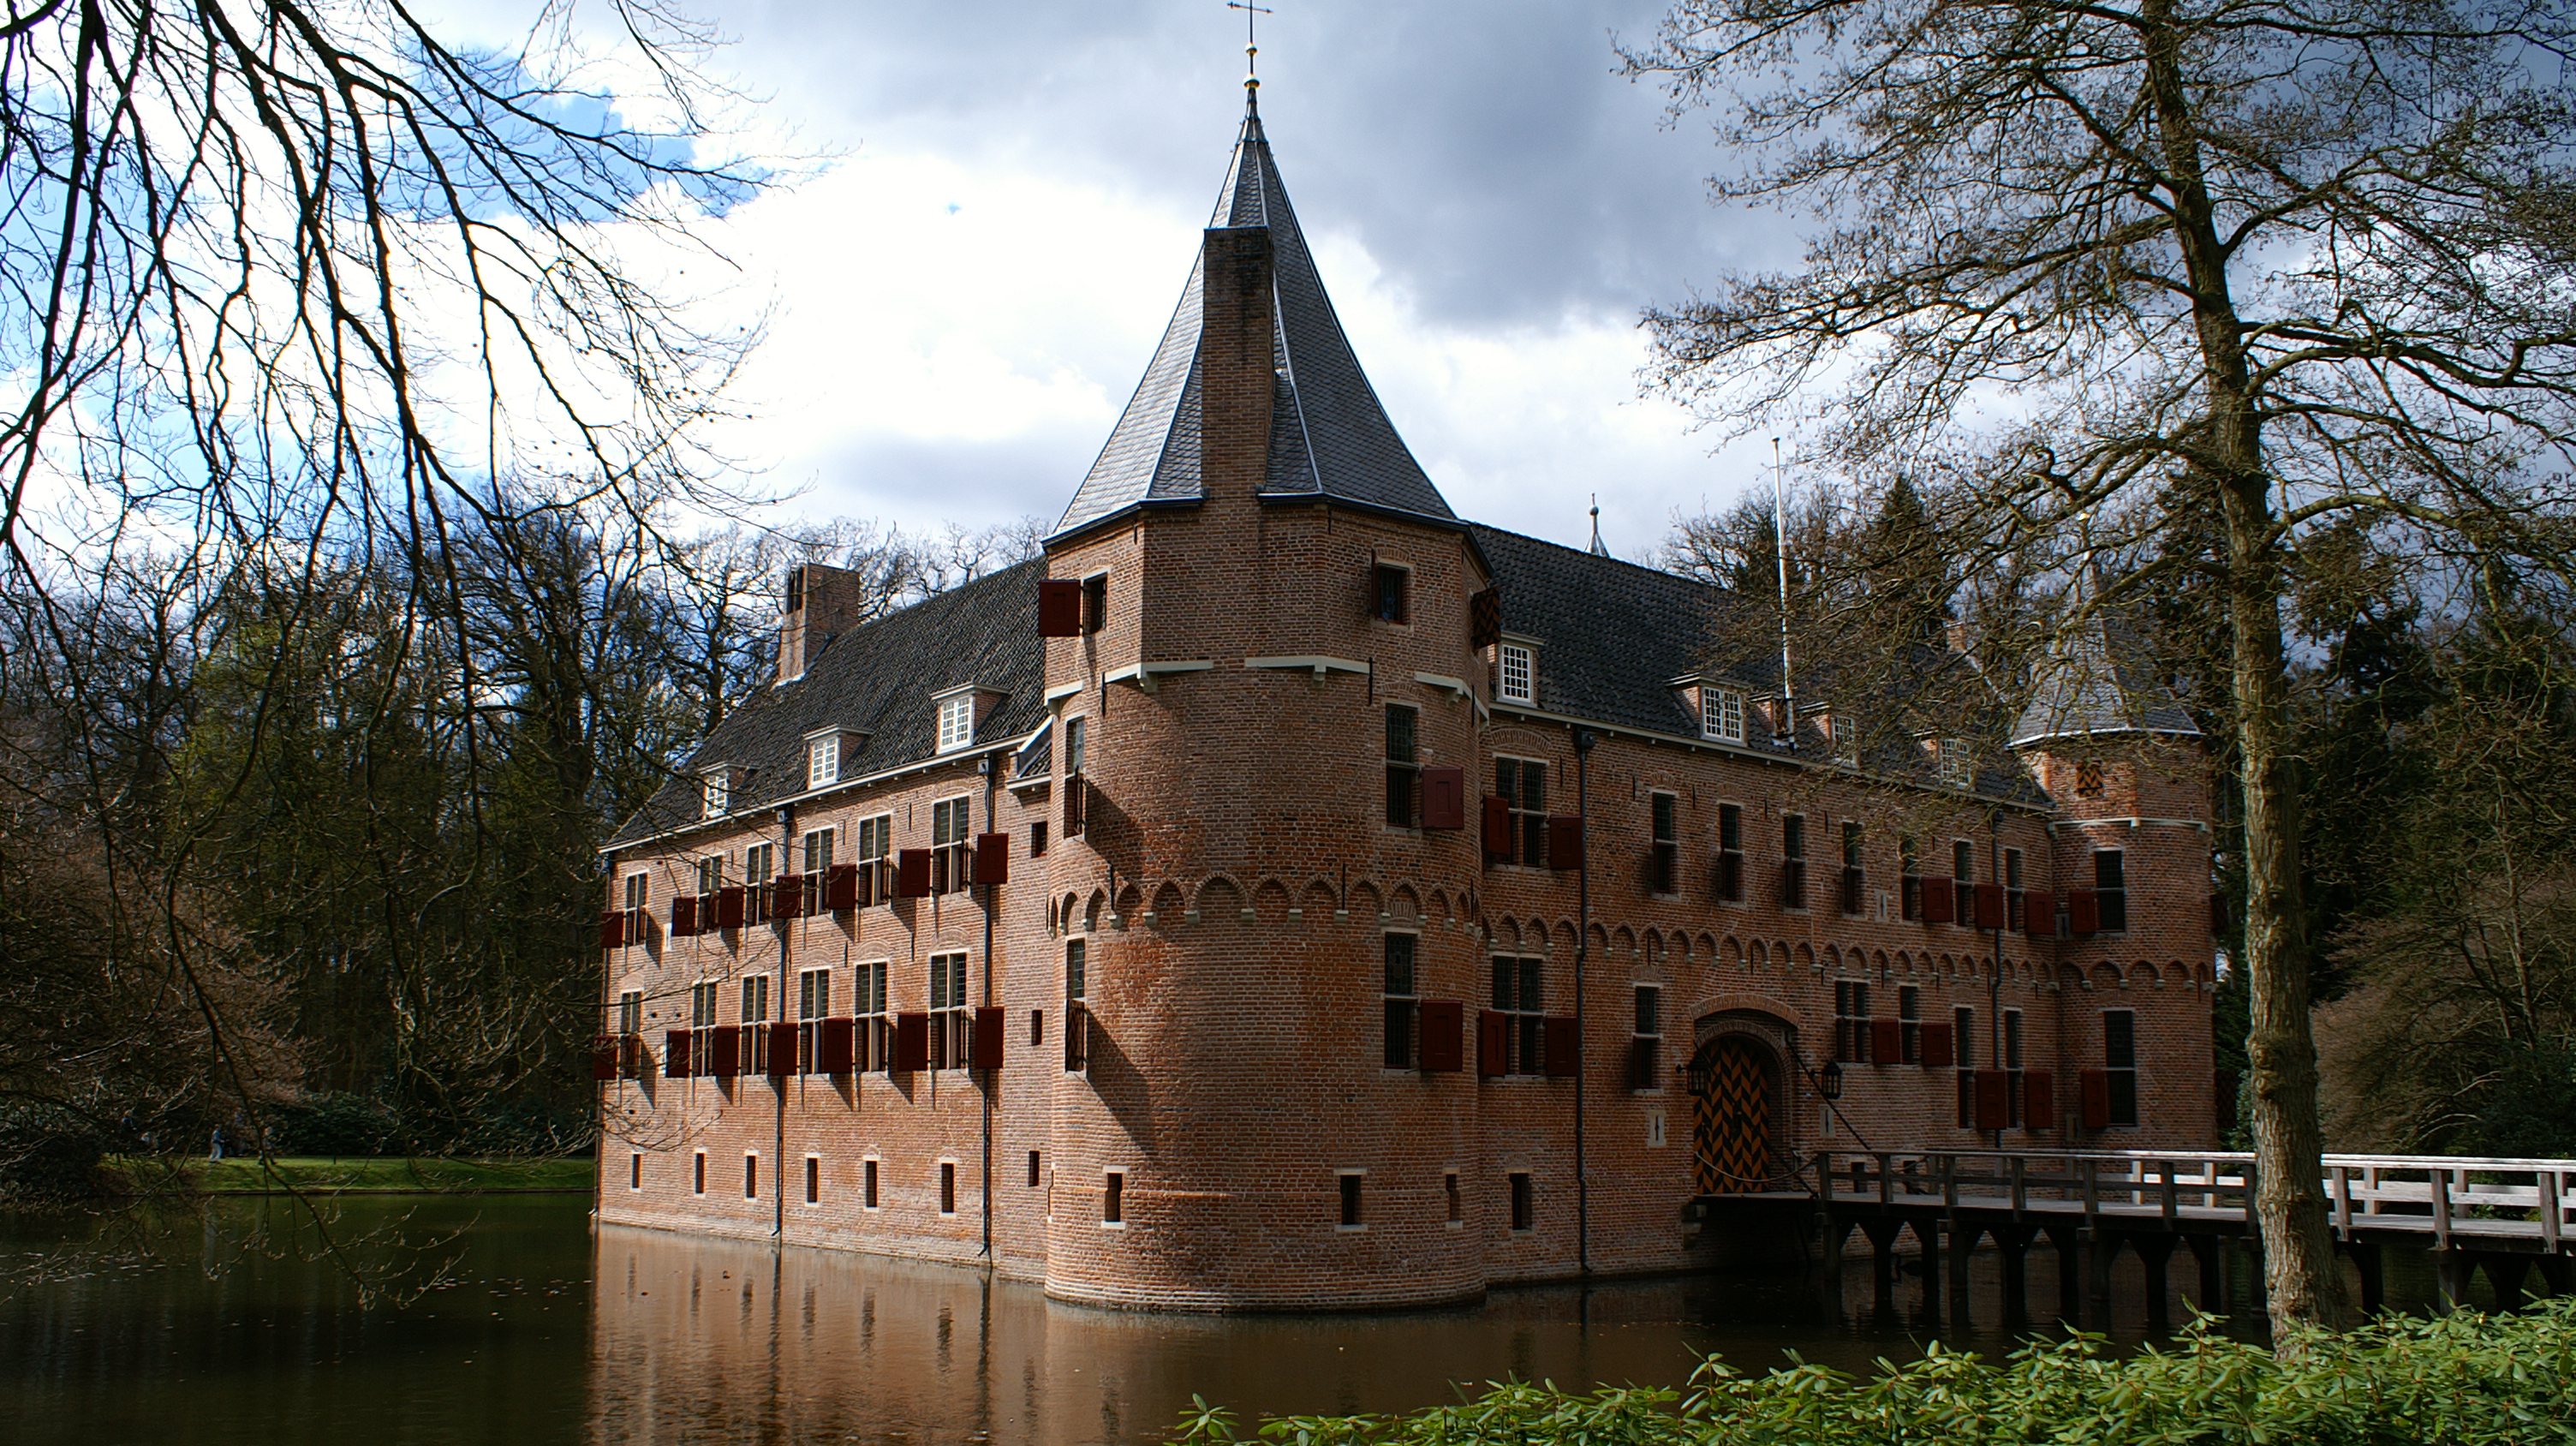 O Hert Oude Loo é um castelo do século XV localizado no campo, a pouco mais de 70 quilómetros de Amesterdão